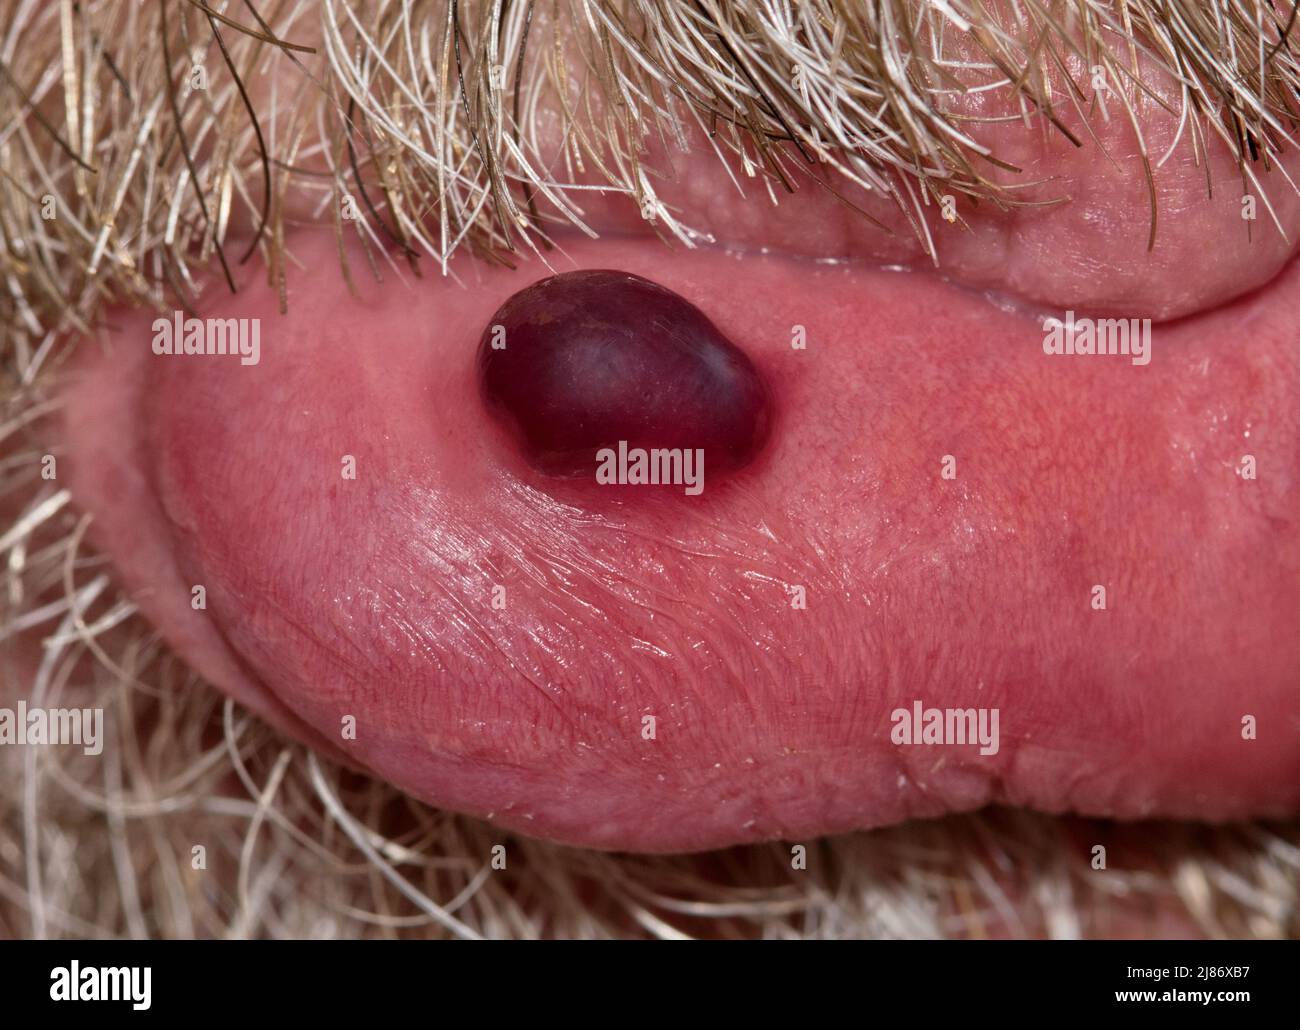 Blutblase isoliert auf der Unterlippe des kaukasischen Männchens, umrahmt mit Schnurrbart und Bart. Häufig verursacht durch Stress oder Beißen von Lippen. Stockfoto